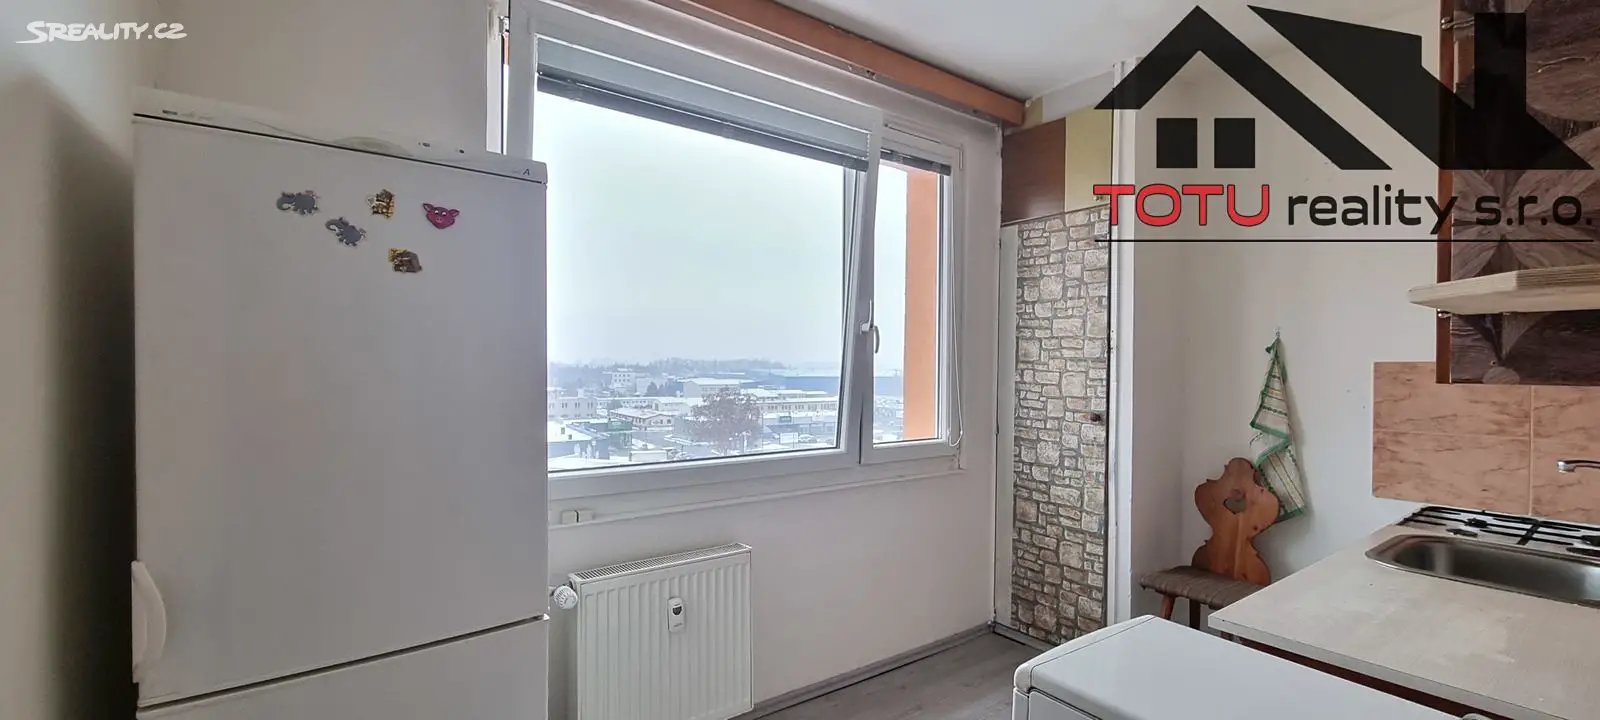 Pronájem bytu 1+1 31 m², Na Zavadilce, Jaroměř - Pražské Předměstí